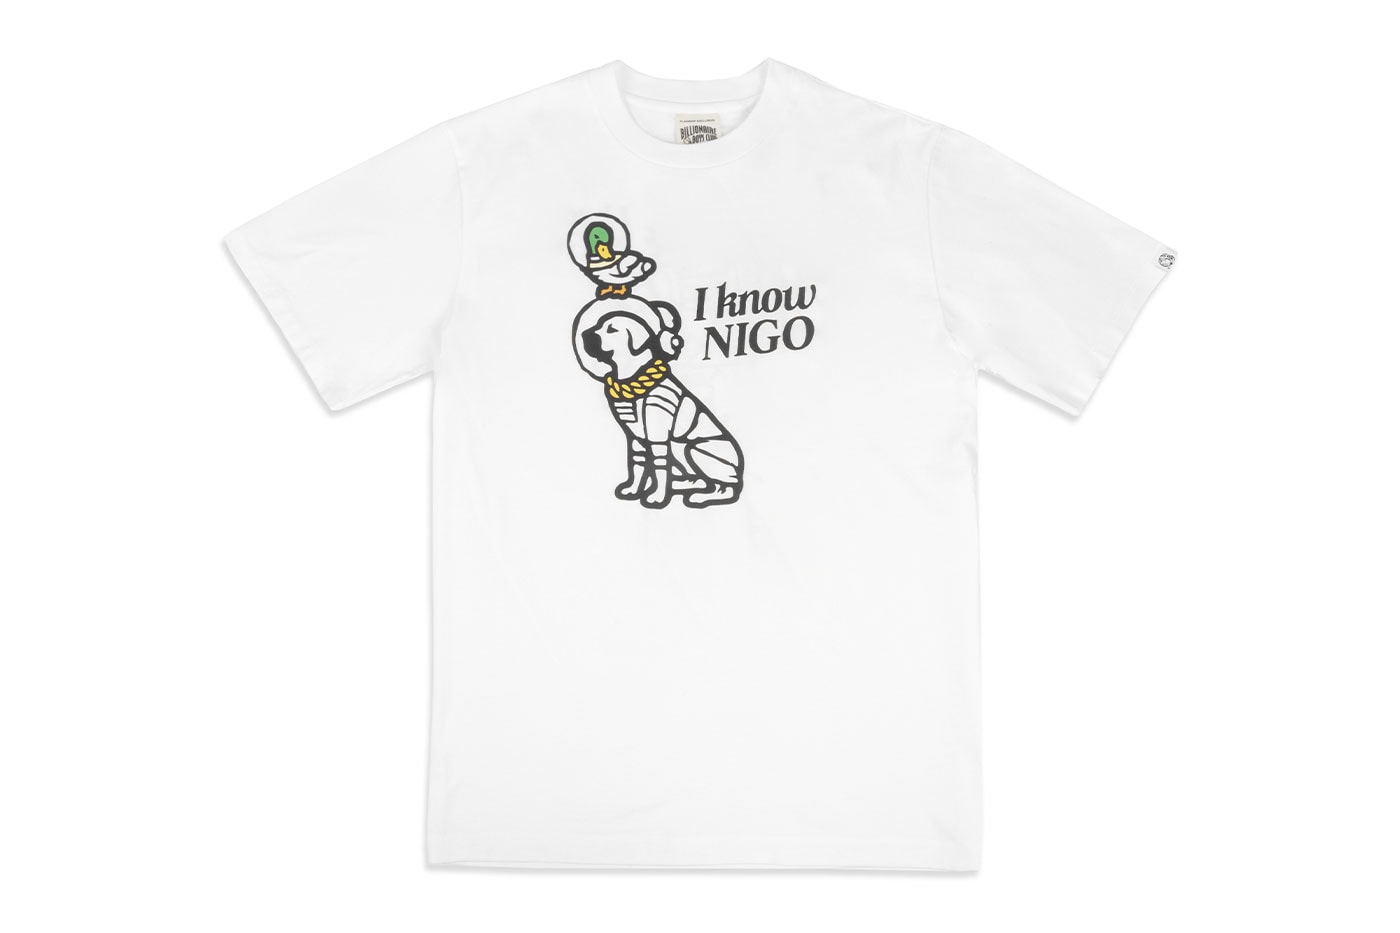 Human Made And Billionaire Boys Club I Know Nigo shirt - Dalatshirt